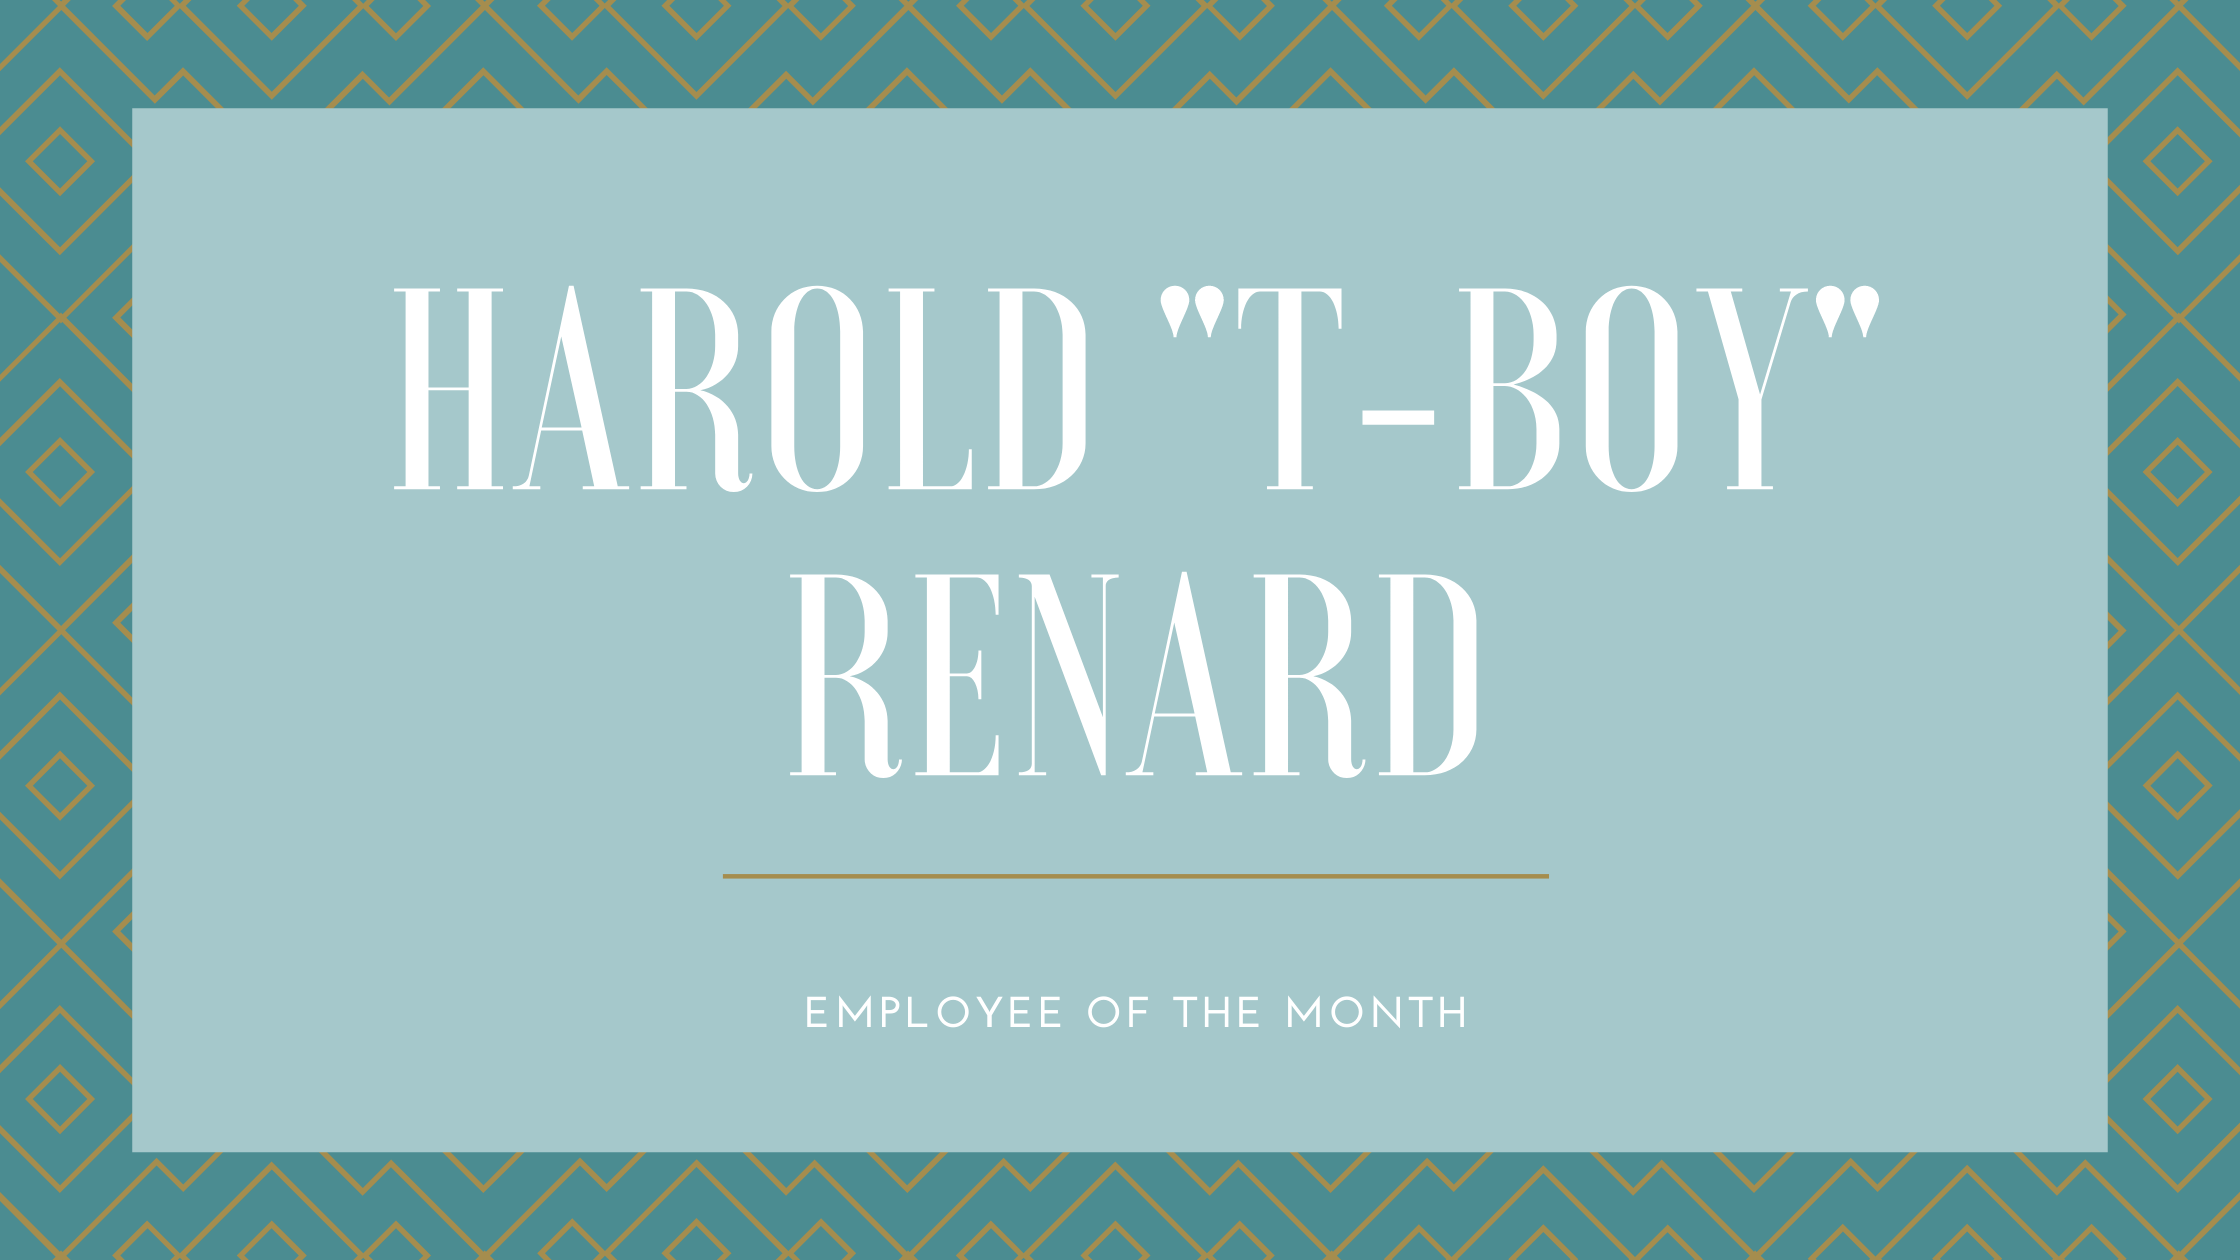 Harold “T-Boy” Renard